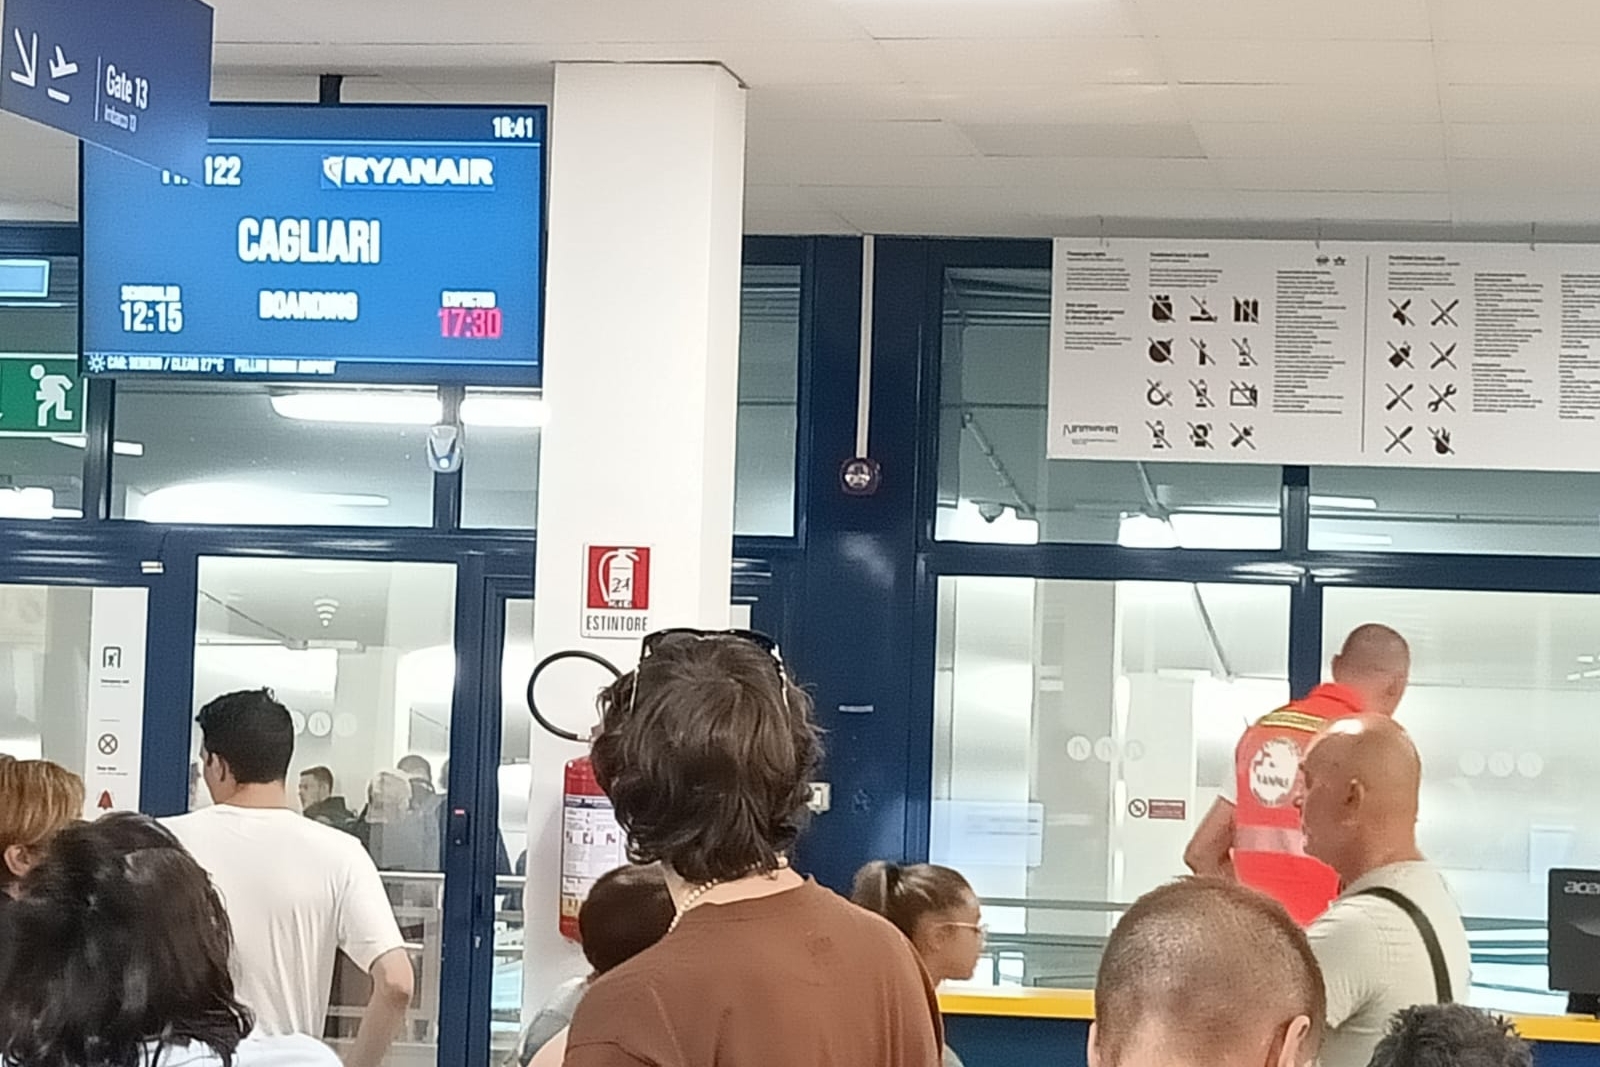 L’aereo per Cagliari non c’è, furia dei passeggeri bloccati a Rimini